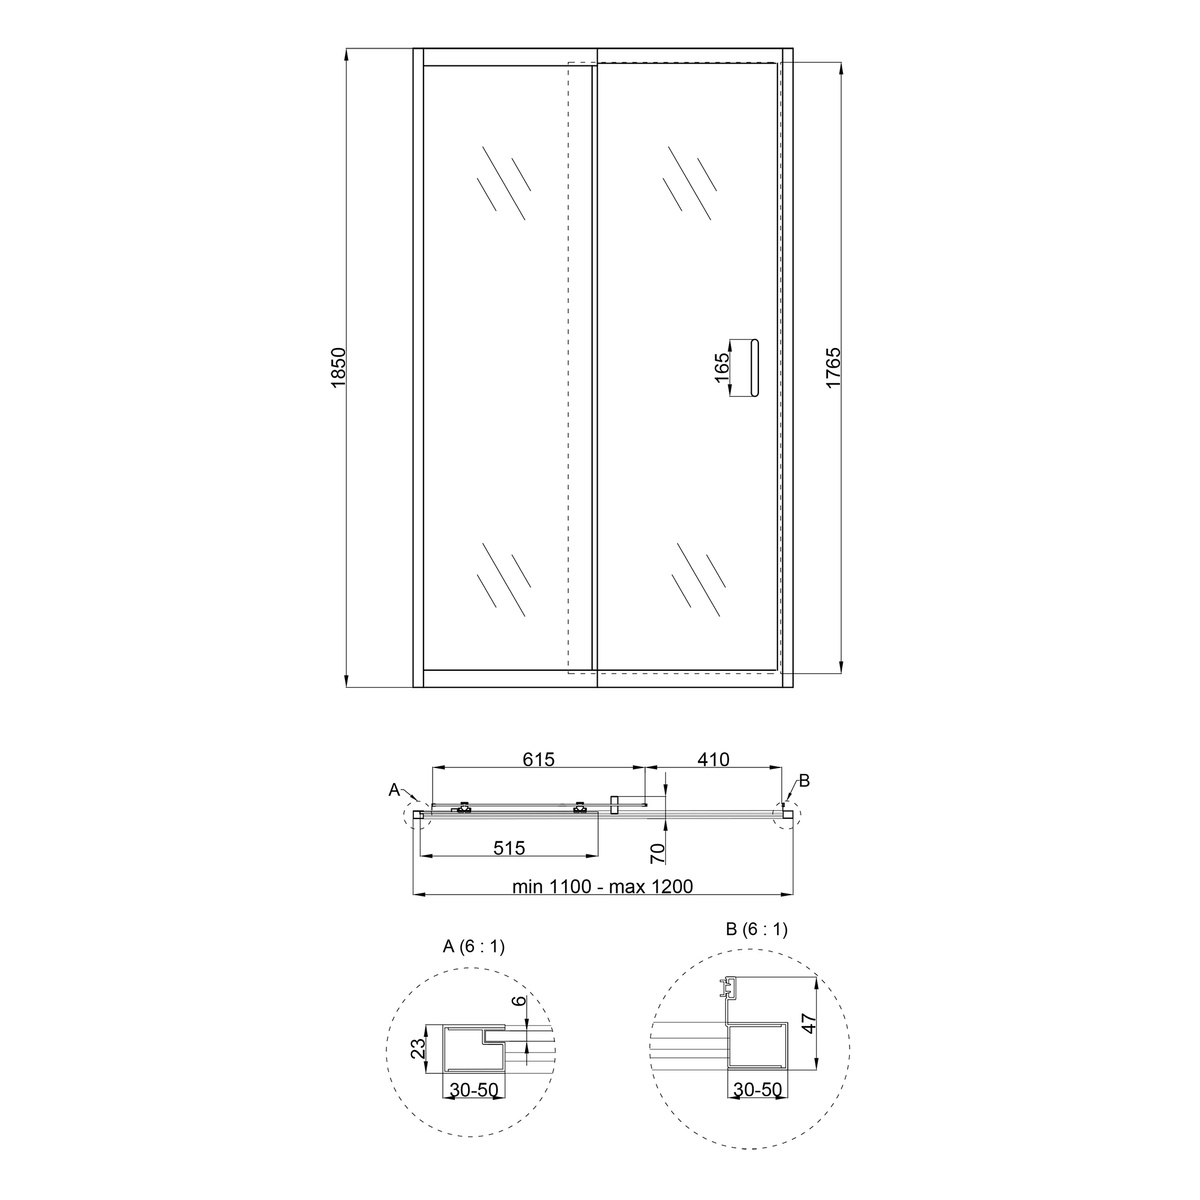 Дверь для душевой ниши Q-TAP Taurus стеклянная универсальная раздвижная 185x120см прозрачная 6мм профиль хром TAUCRM201112C6